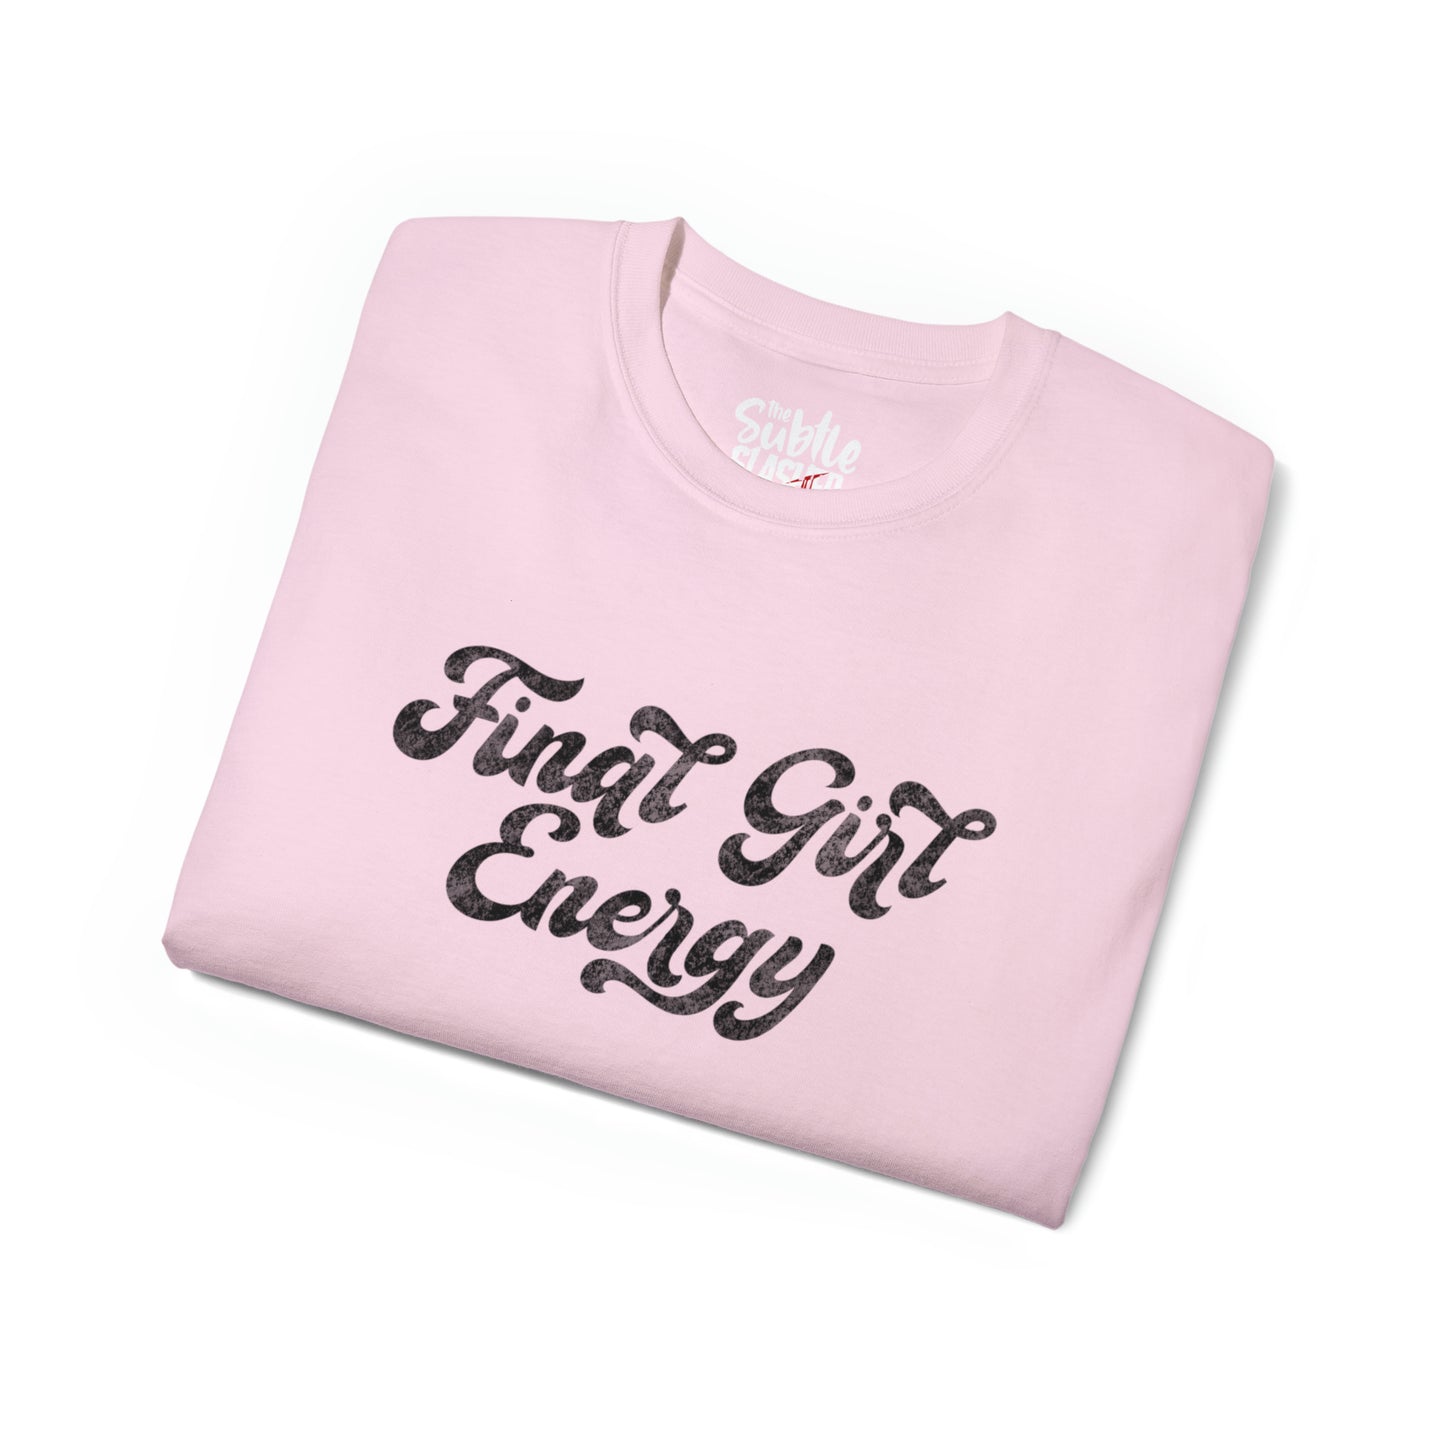 Final Girl Energy Tee